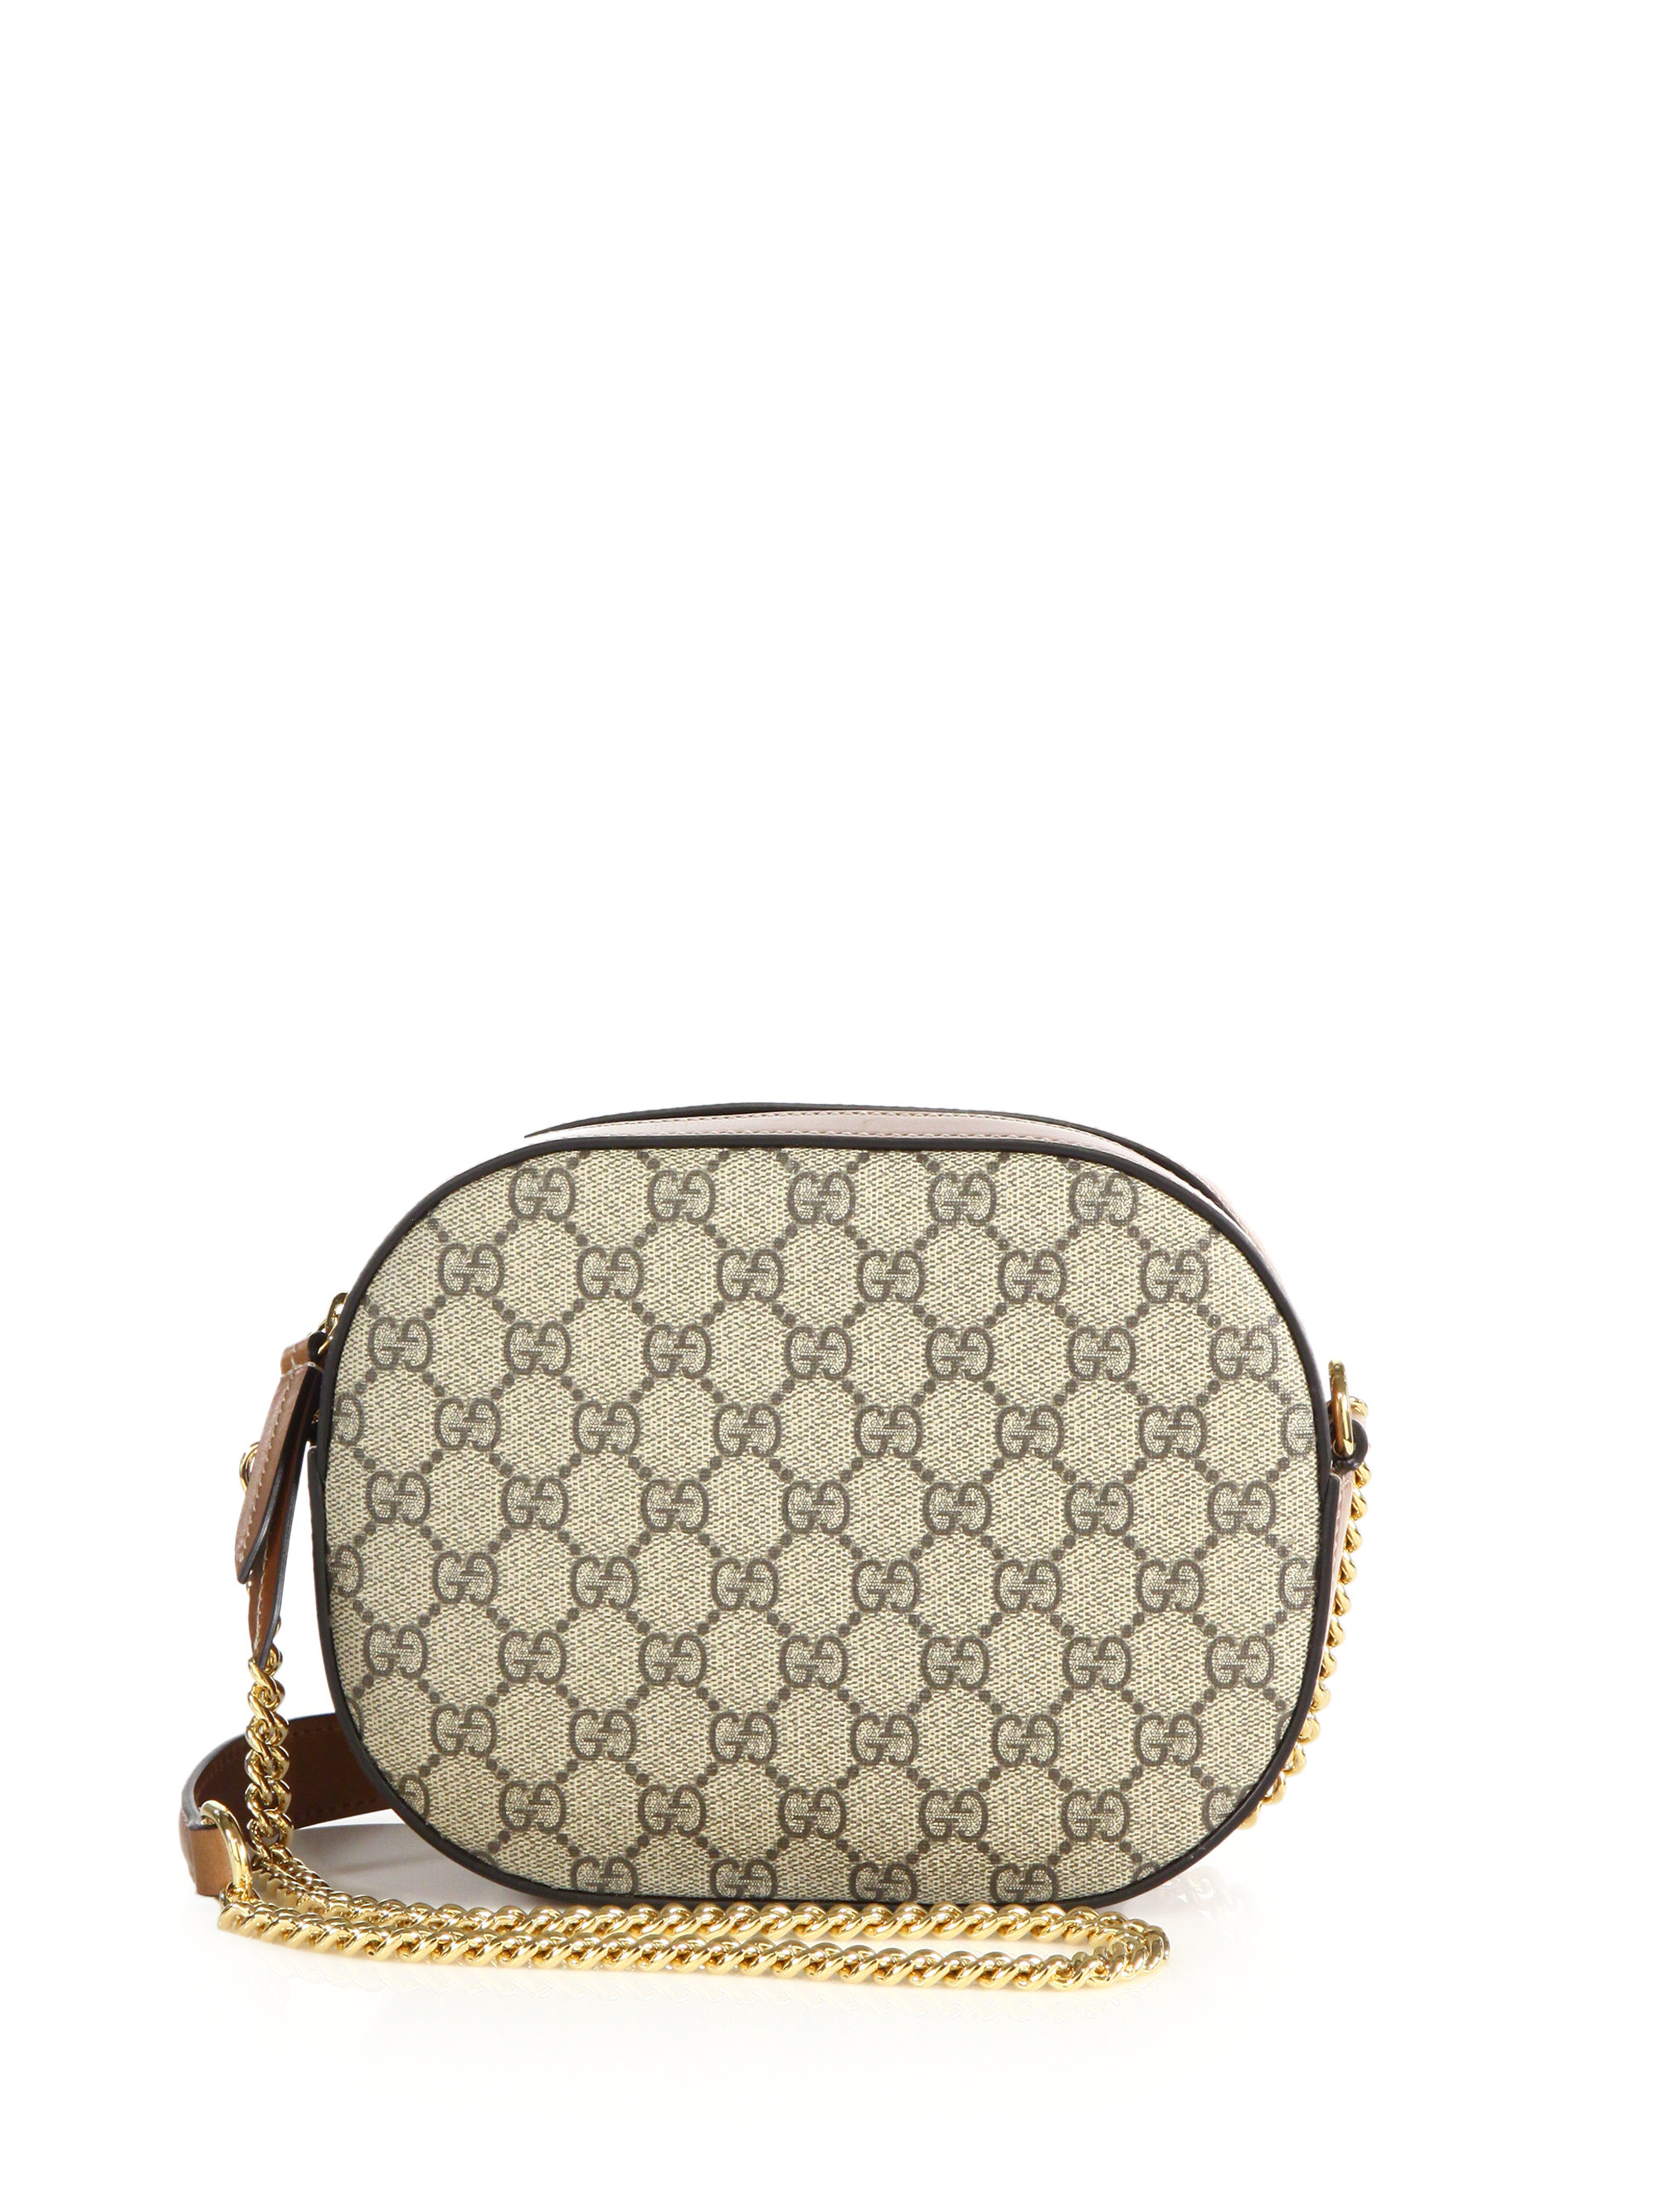 Lyst - Gucci GG Supreme Canvas Mini Chain Bag in Brown